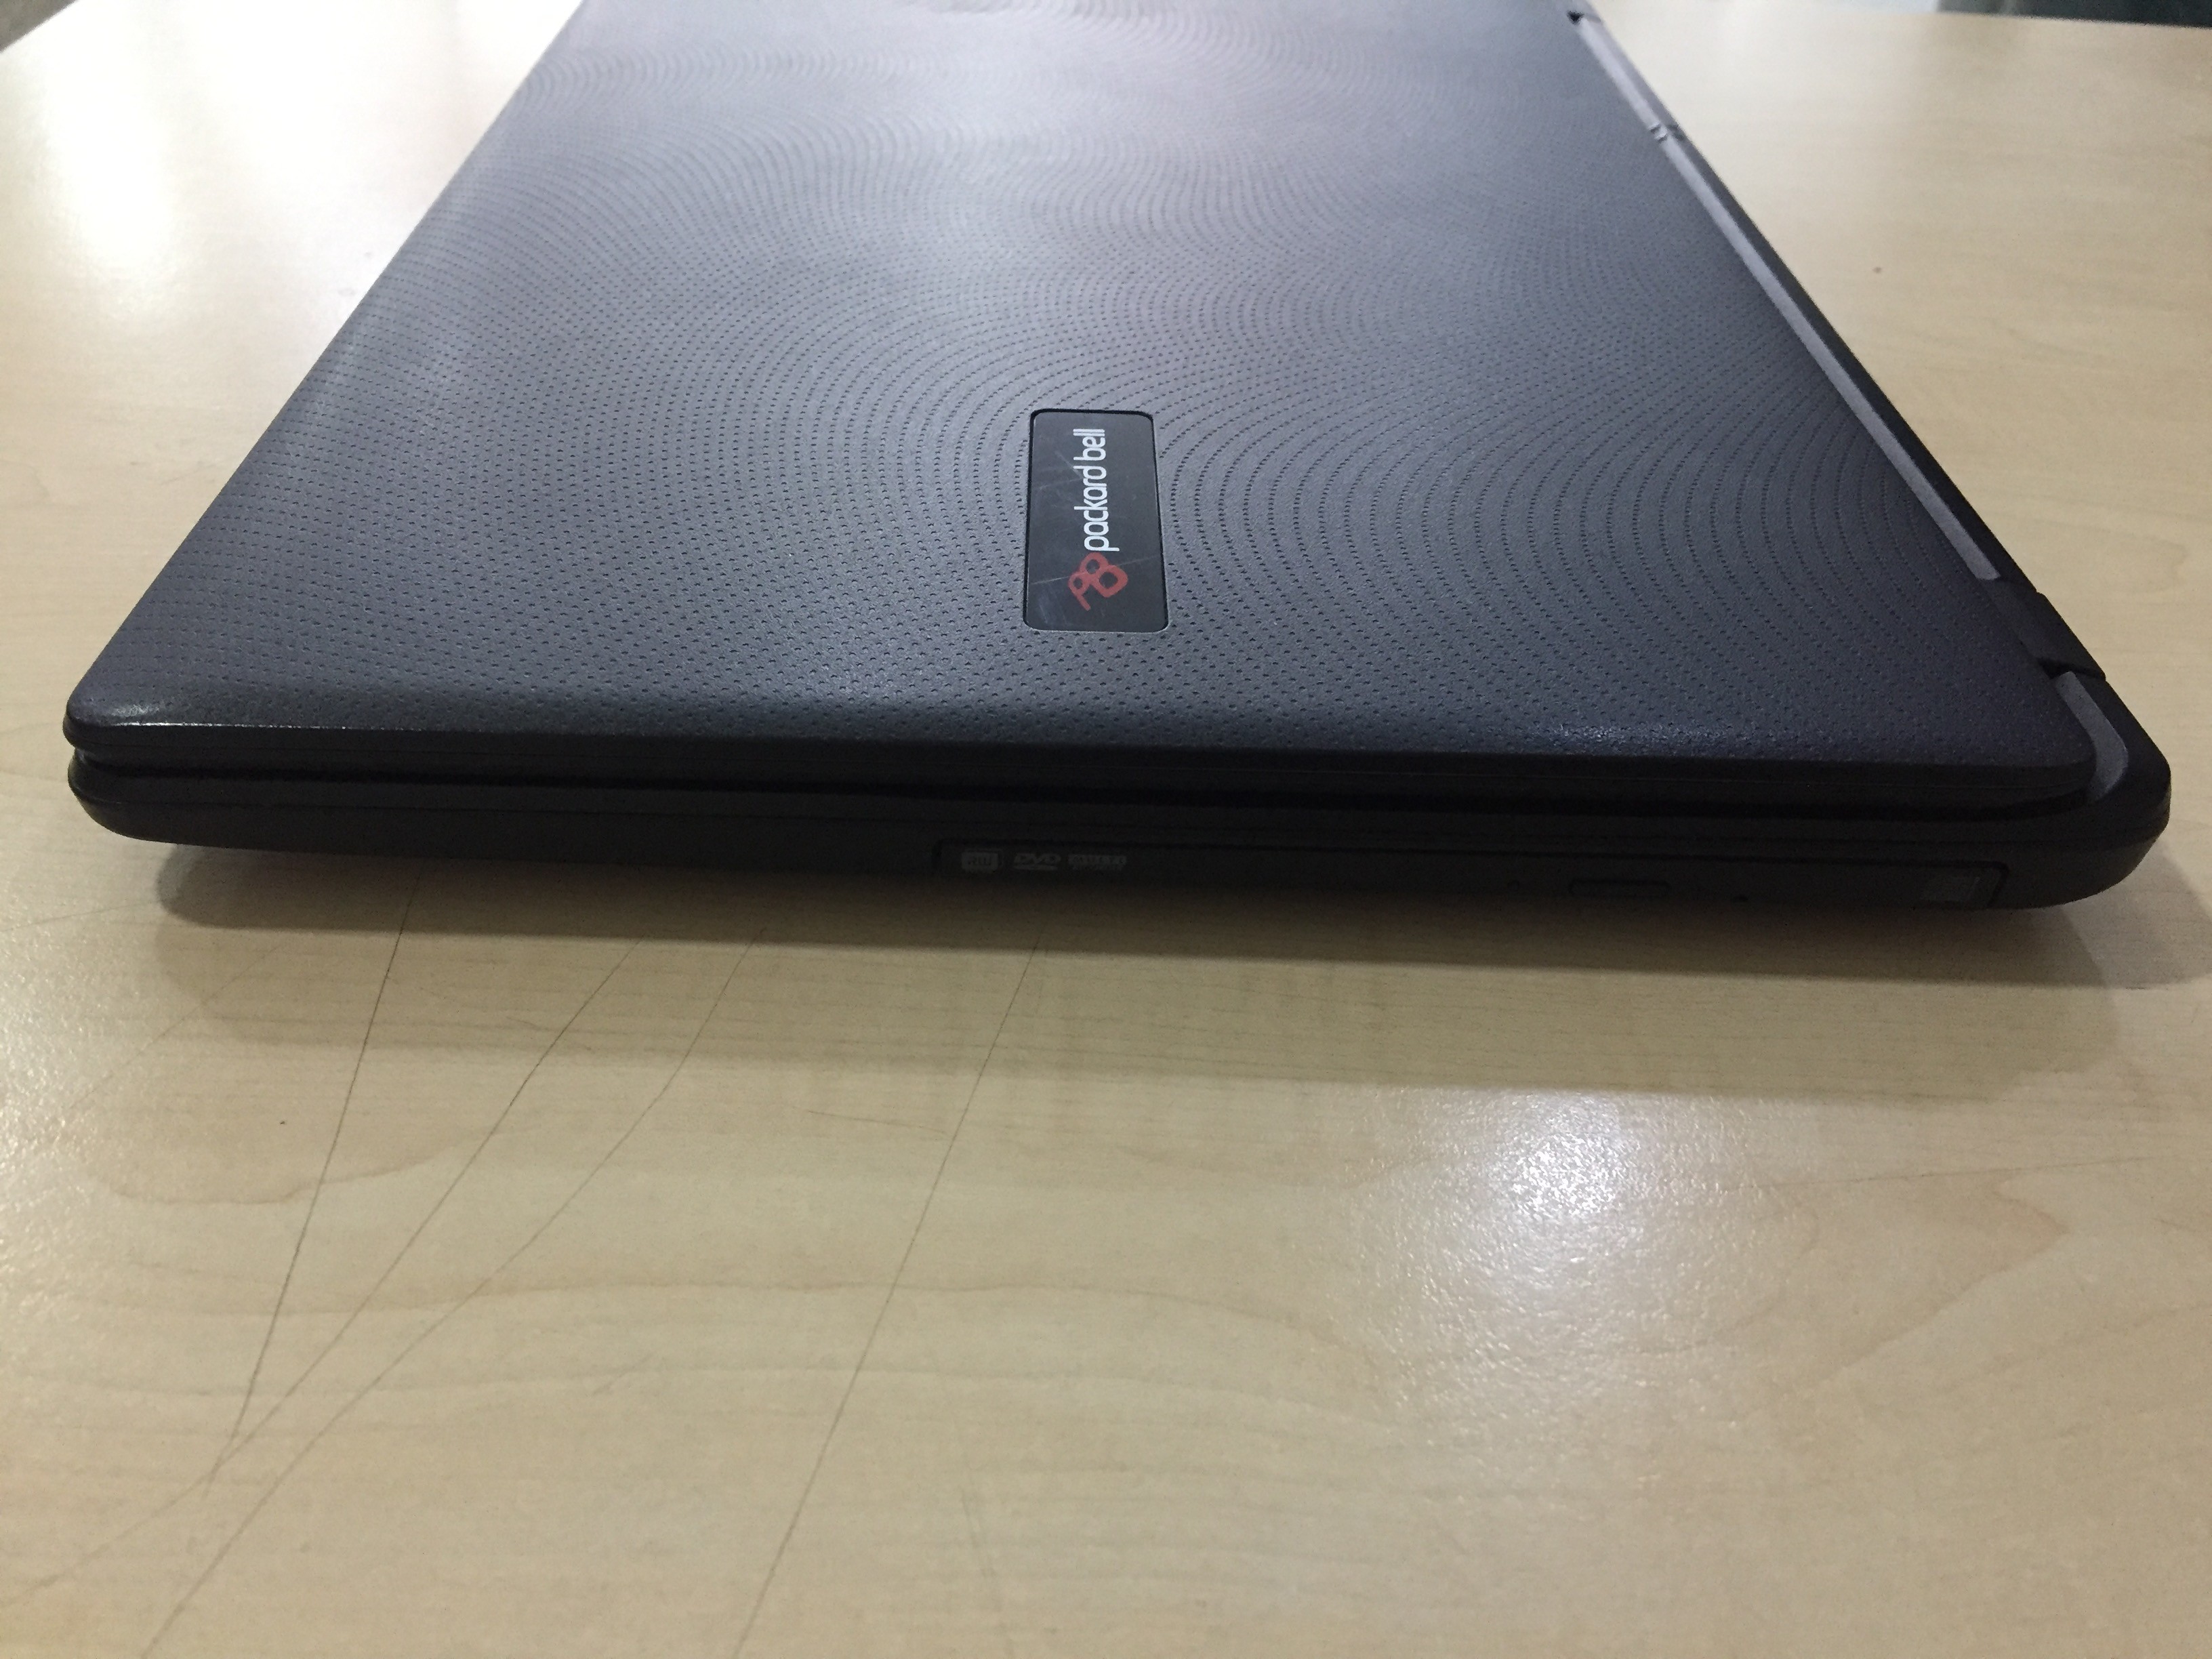 ( 2300 TL  ) Satılık PackardBell i5. 4. nesil Laptop / Minik Kusur Harici Tertemiz